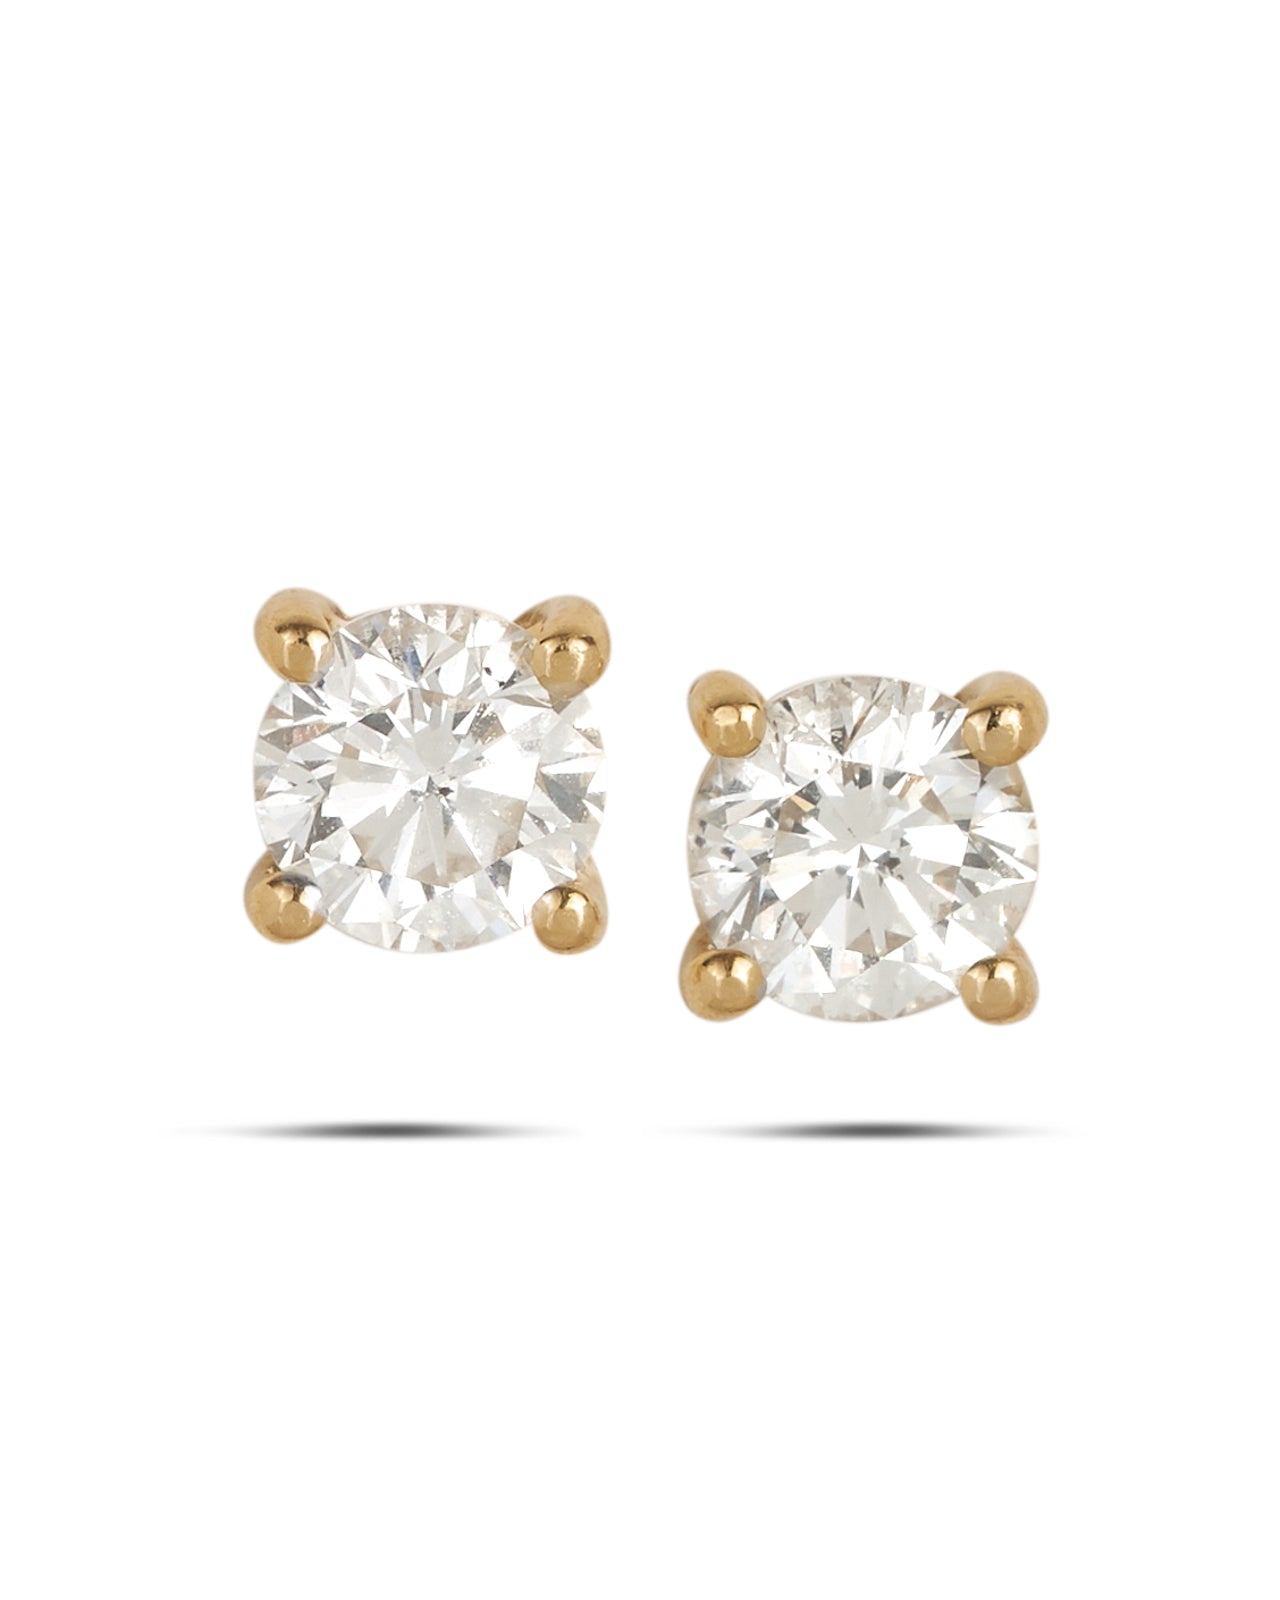 Diamond Stud Earrings 18ct 1.09 carat